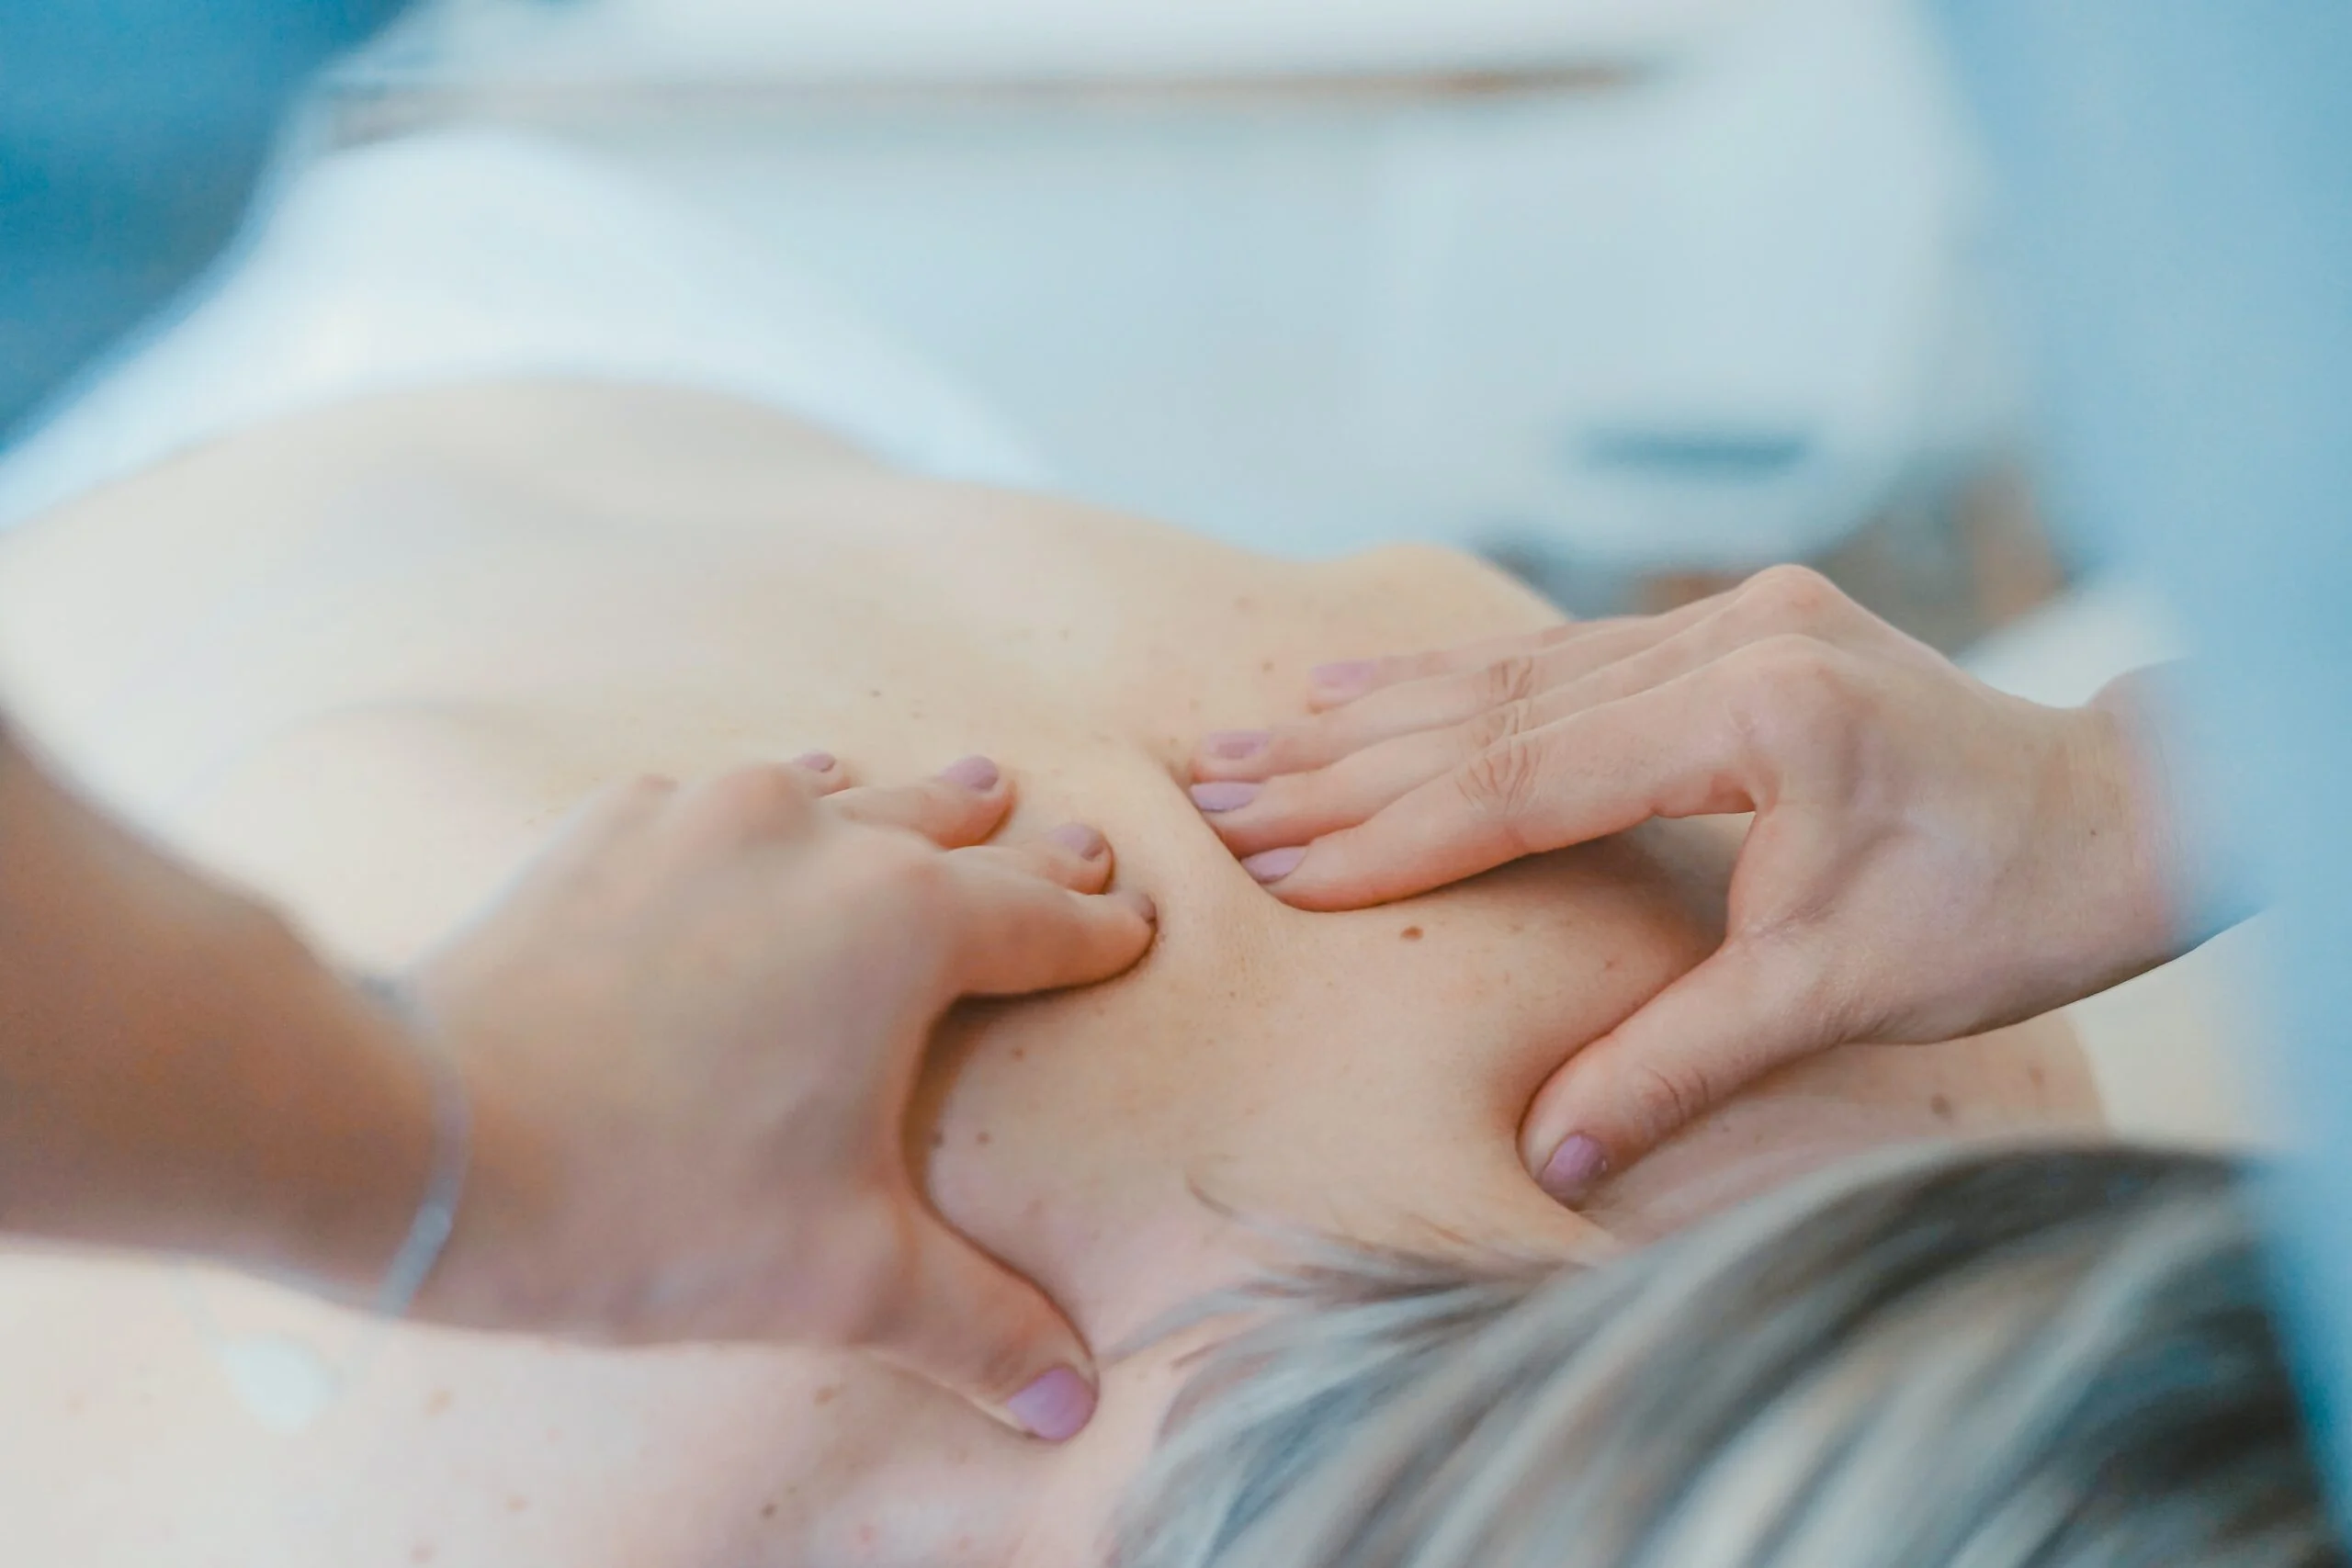 a patient having a back massage